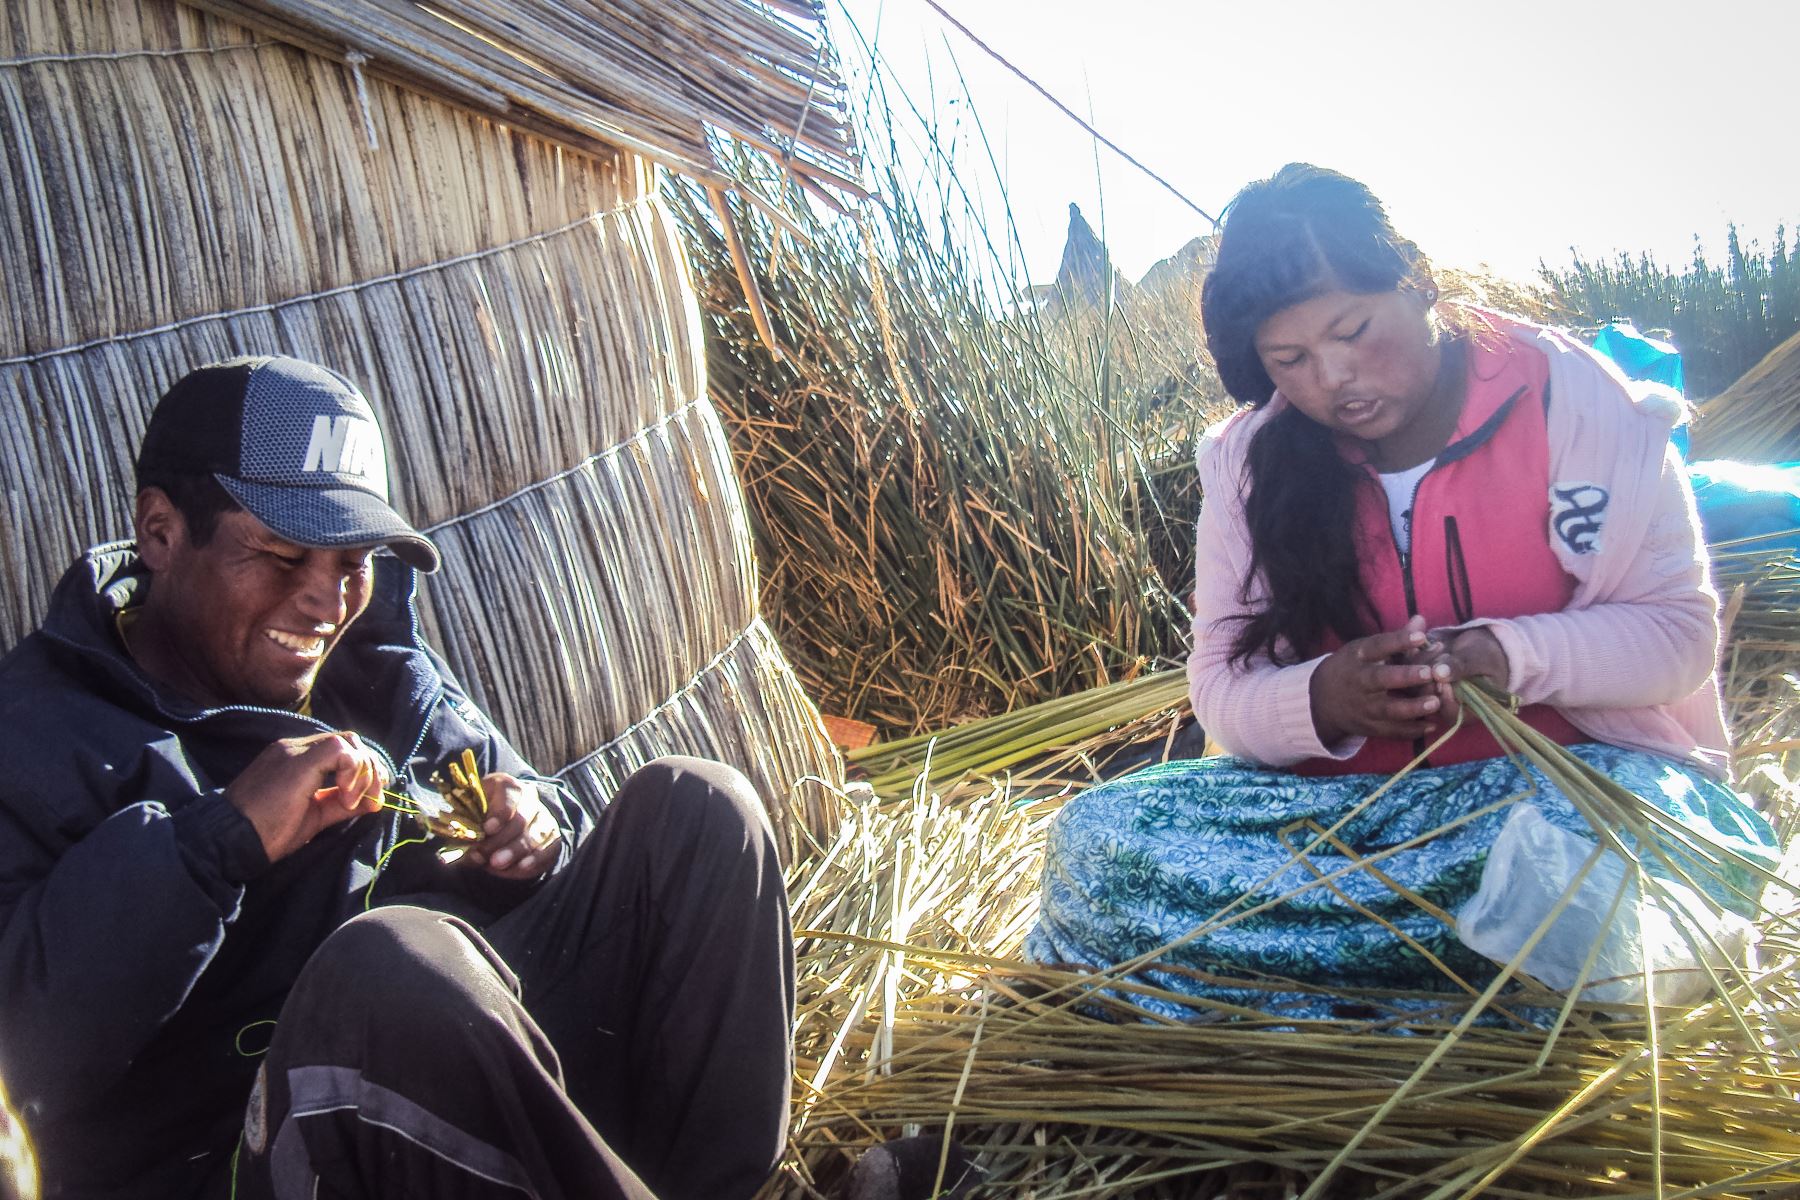 Niños, niñas y adolescentes del pueblo originario Uro fueron partícipes del  proyecto «Qhas Qot Zuñinaka» “las personas de agua y lago”, que tiene como objetivo revalorar sus costumbres a través de la fotografía.
Foto: ANDINA/Cortesía Colectivo HATUN ÑAKAJ